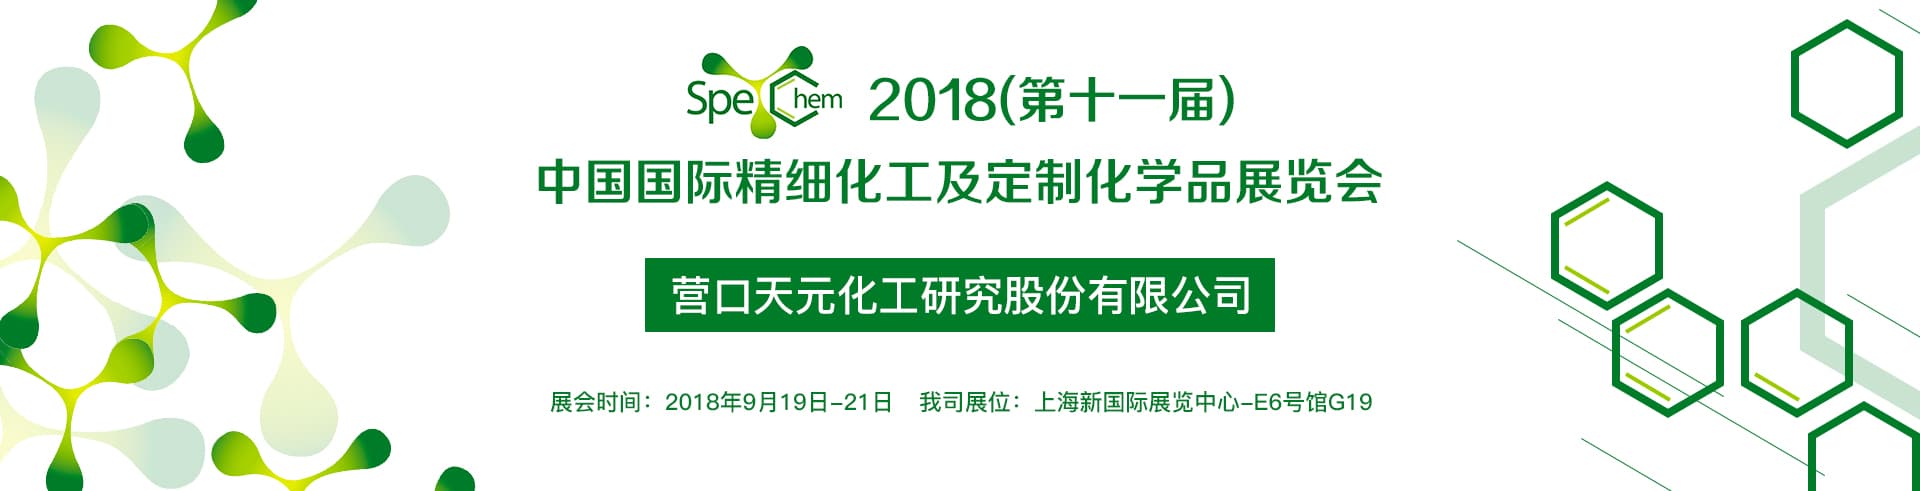 天元化研所参加2018年第十一届中国精细化工展